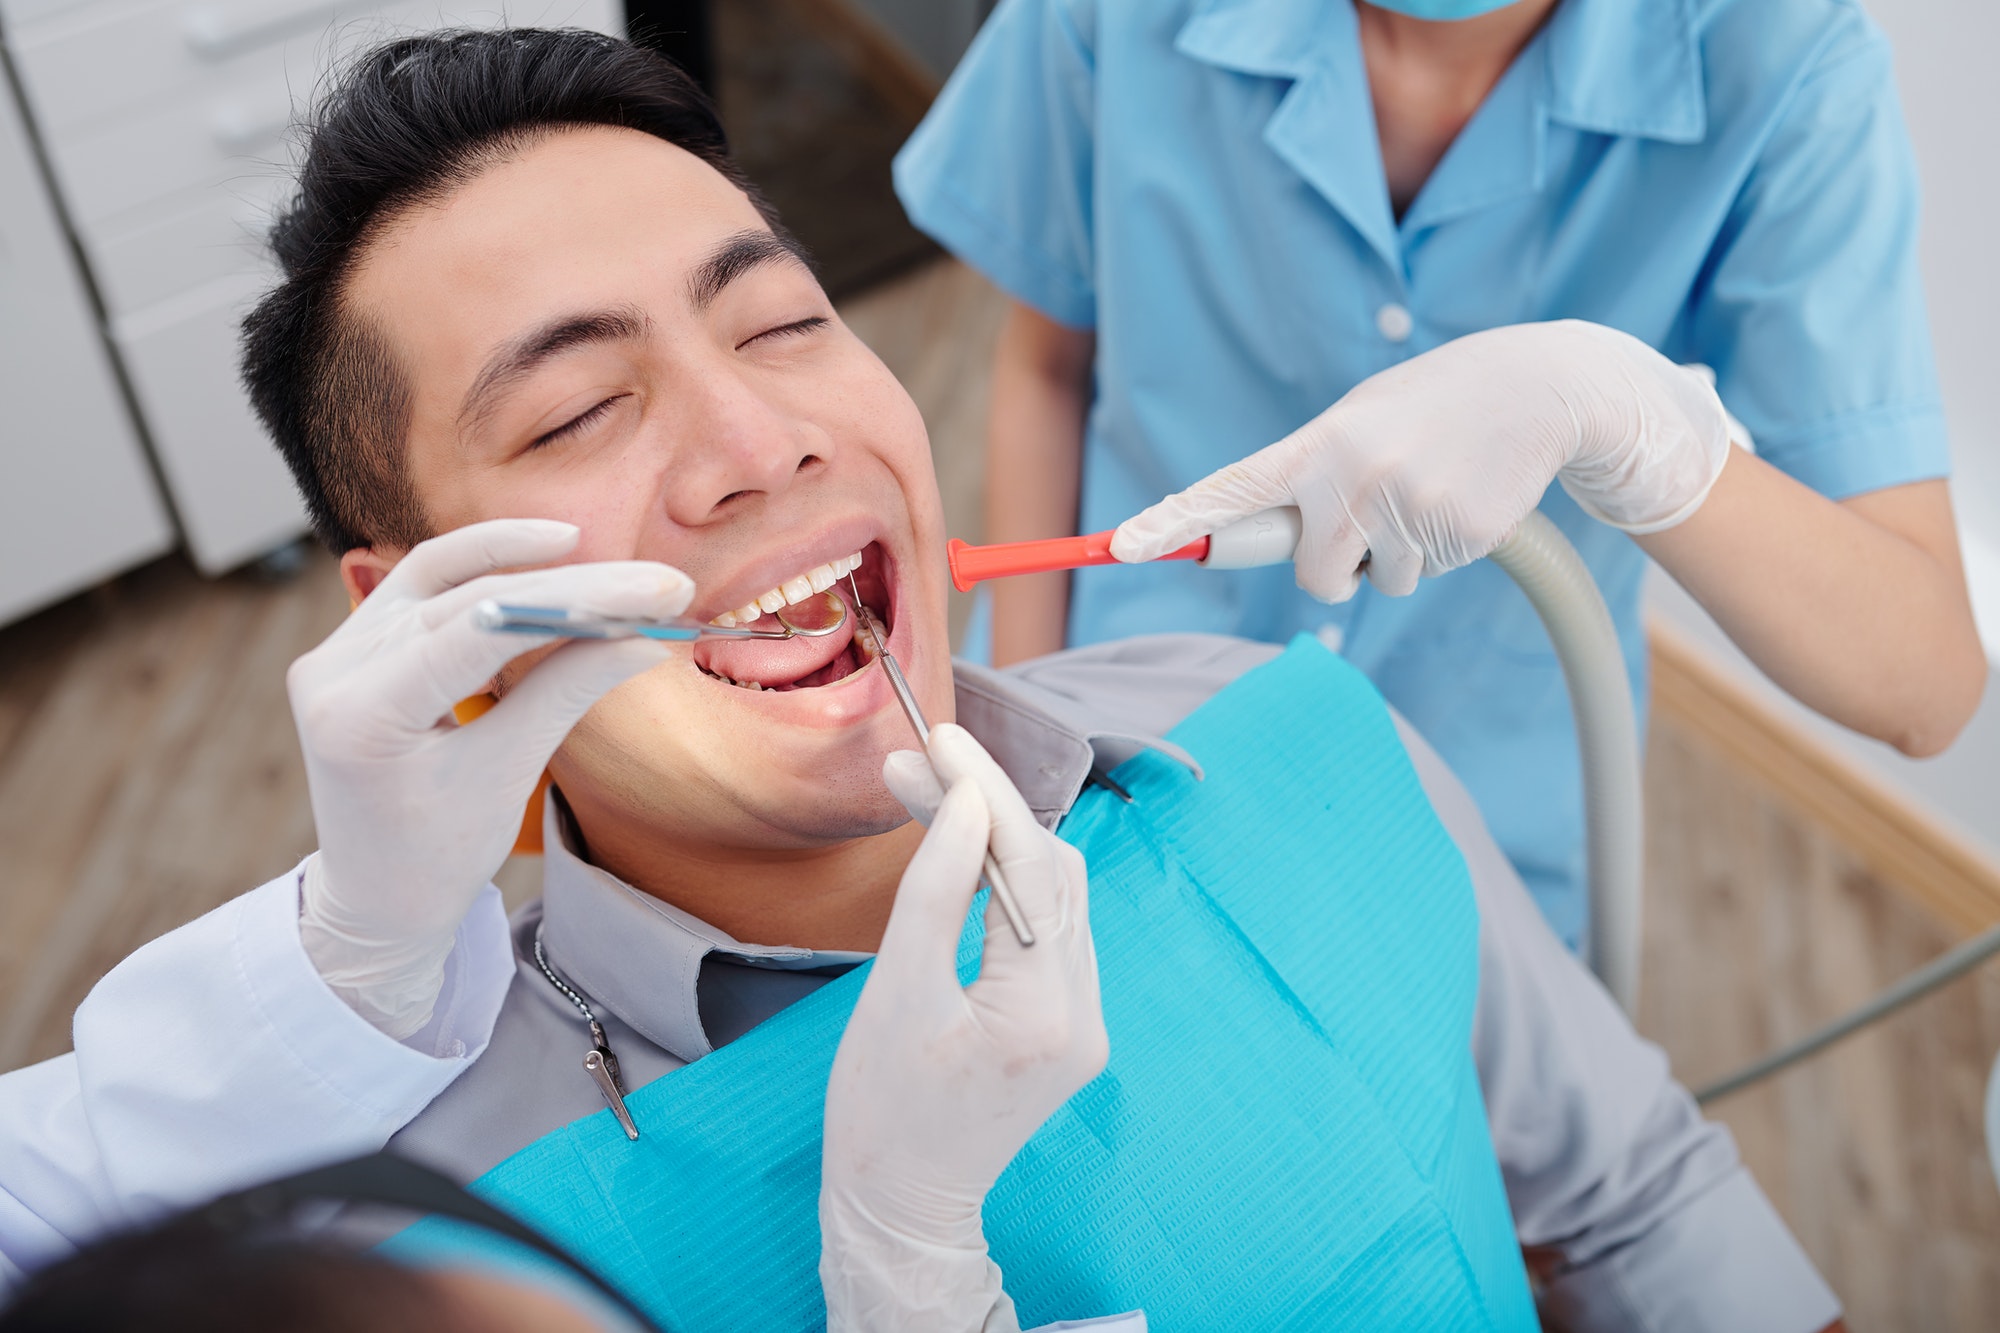 Dentist treating teeth of patient